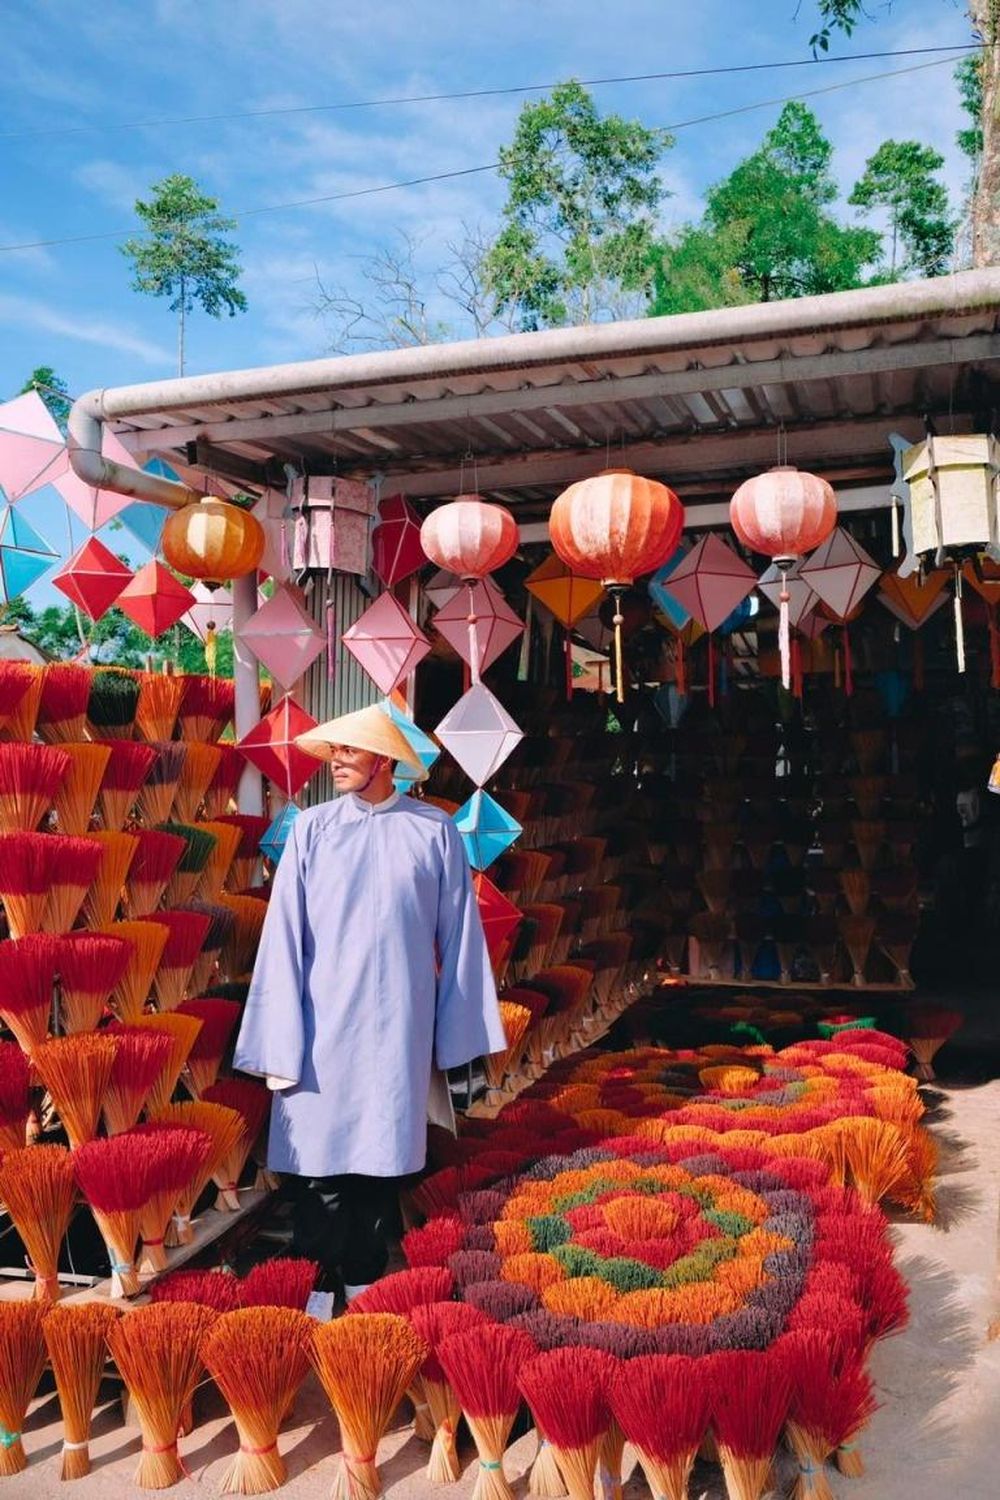 Làng hương Thủy Xuân vừa là làng nghề truyền thống vừa là điểm du lịch nổi tiếng ở tỉnh Thừa Thiên - Huế. 